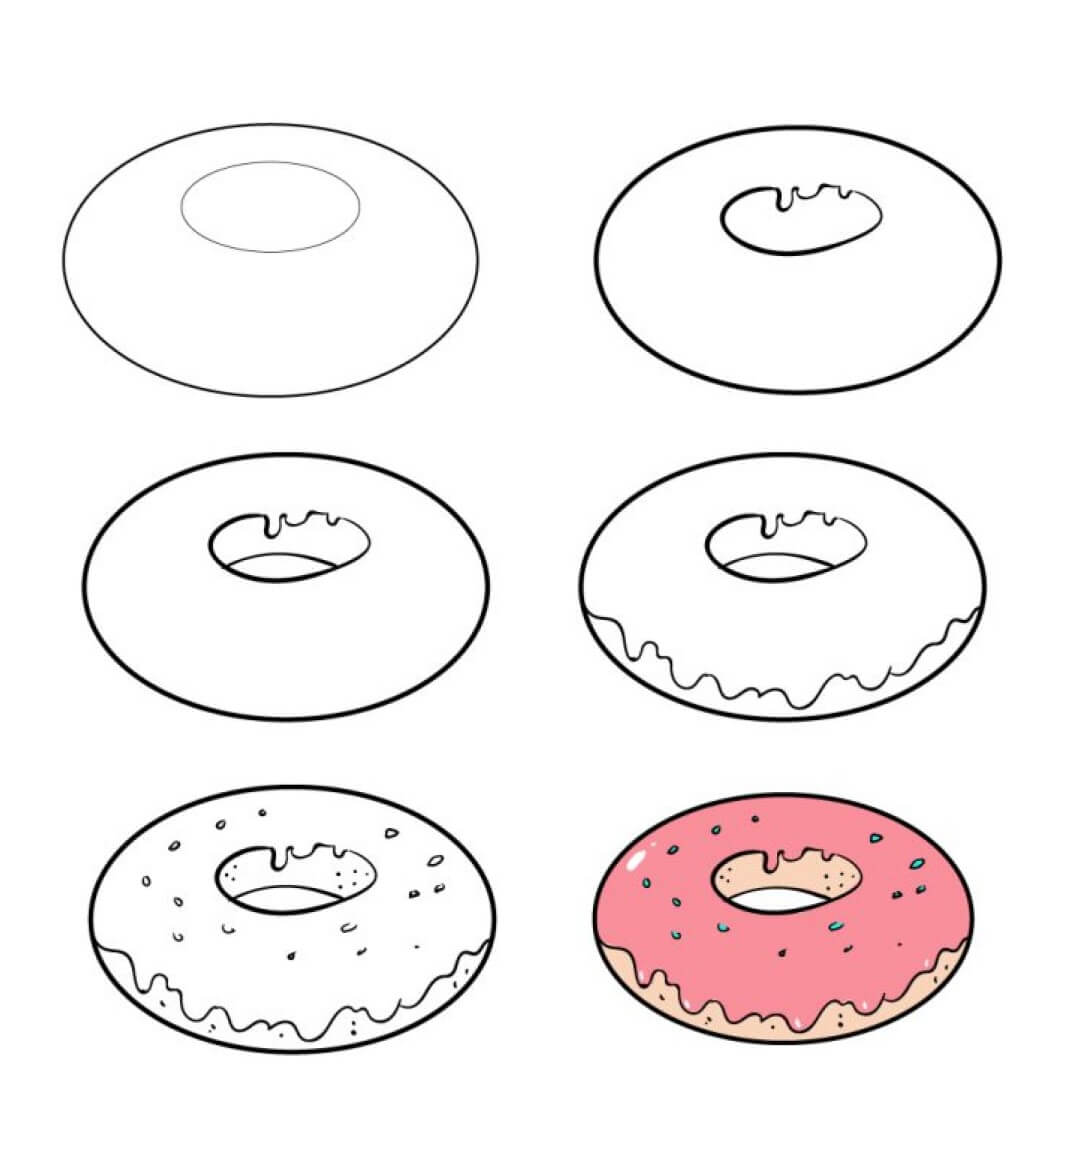 Donut-Idee (2) zeichnen ideen